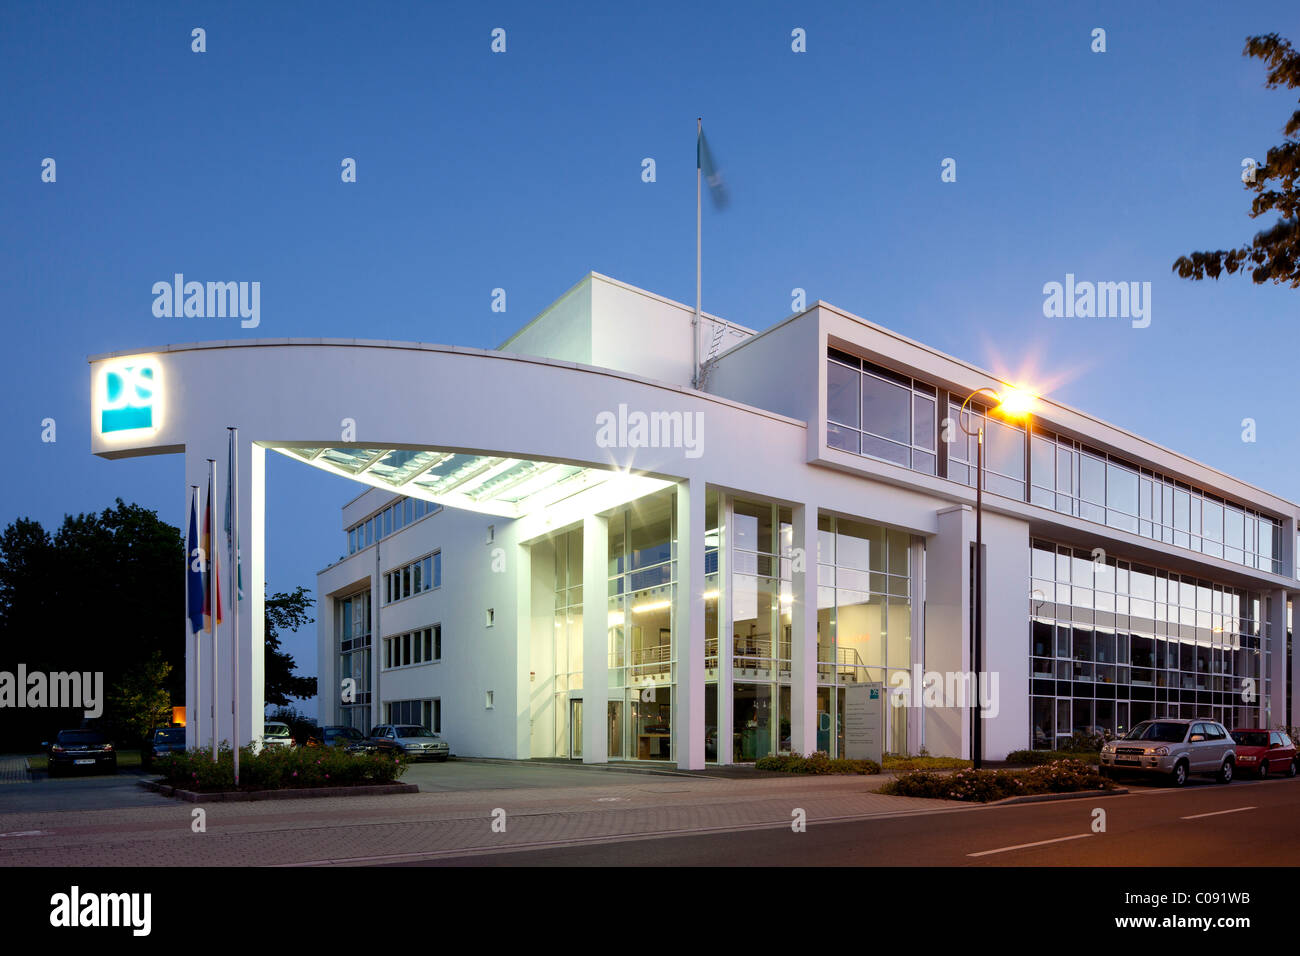 Immeuble de bureau, affaires Stadtkrone Os dans lequel se trouvent, Dortmund, Ruhr, Nordrhein-Westfalen, Germany, Europe Banque D'Images